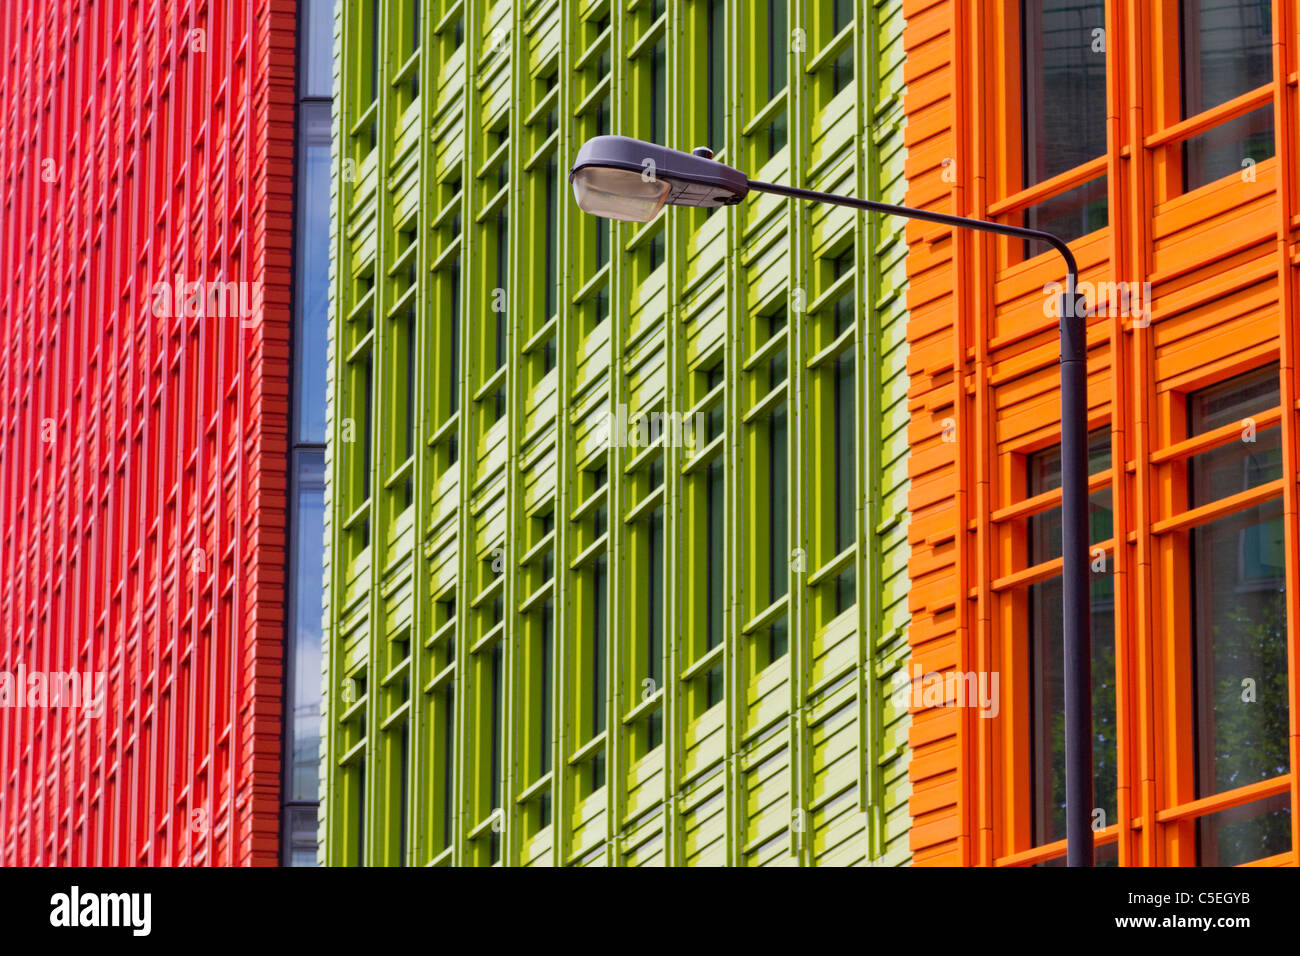 La colorida arquitectura de nueva oficina Central Saint Giles, Londres Foto de stock